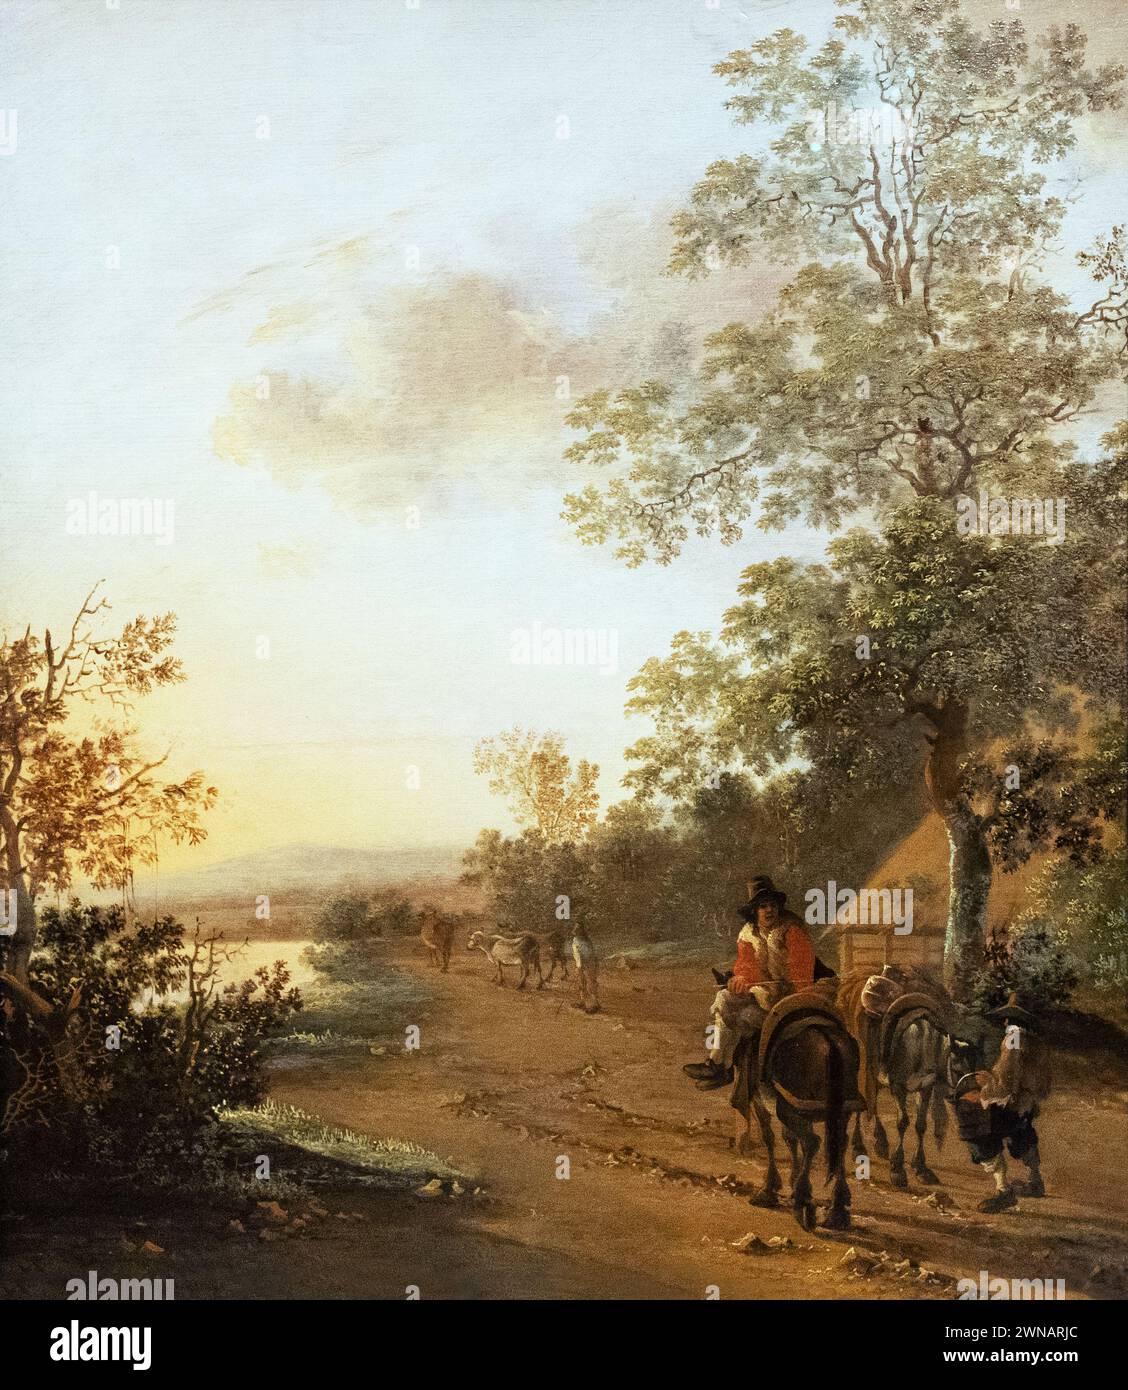 Jan Dirksz beide, oder Jan beide, Gemälde „Straße am Rand eines Sees“ um 1640; italienisches Landschaftsgemälde von niederländischem Maler, 17. Jahrhundert. Stockfoto